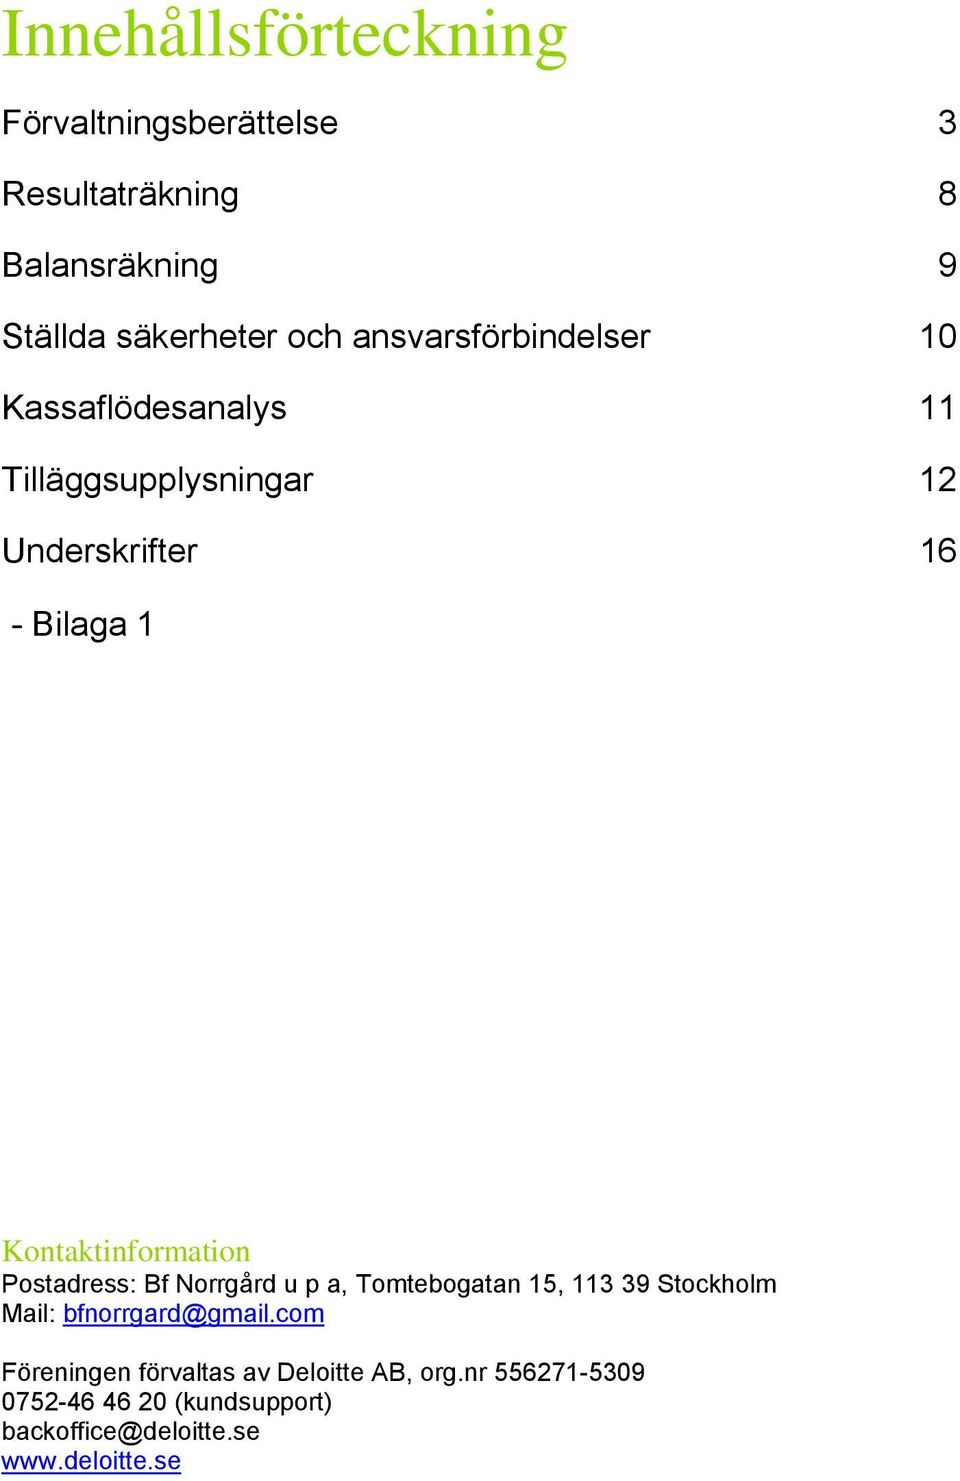 Kontaktinformation Postadress: Bf Norrgård u p a, Tomtebogatan 15, 113 39 Stockholm Mail: bfnorrgard@gmail.